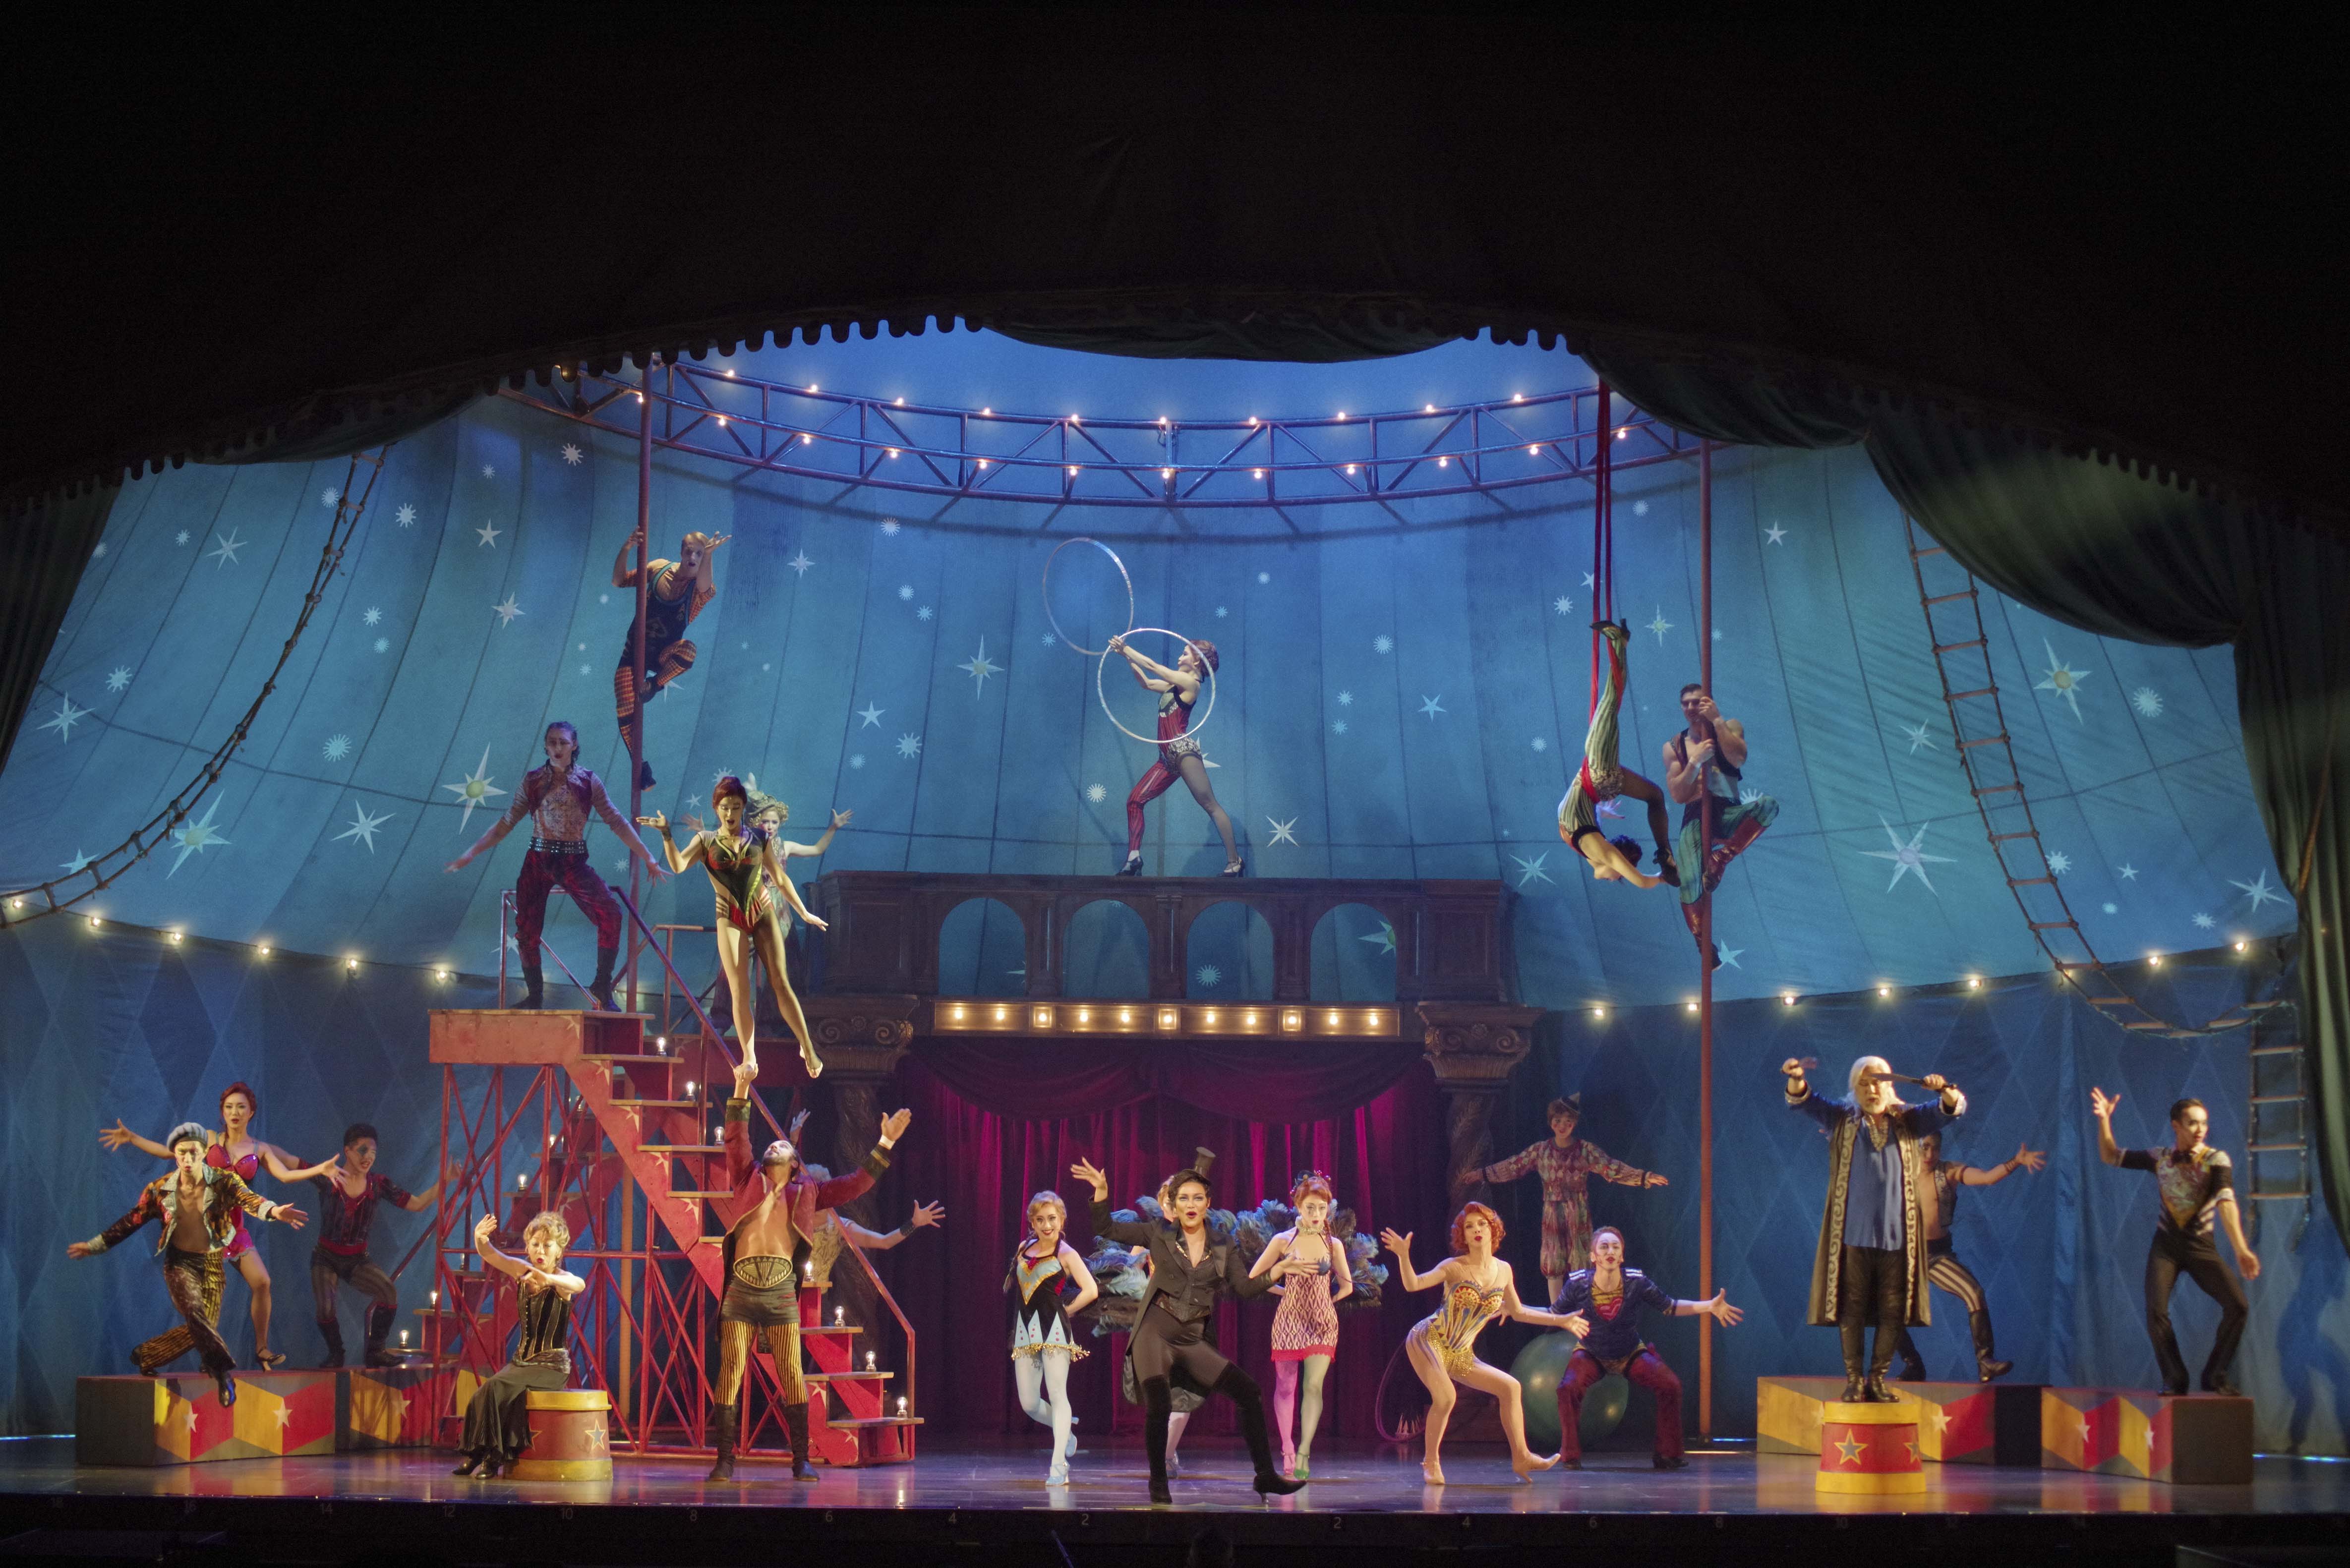 ミュージカルとサーカスが融合 ブロードウェイミュージカル ピピン が開幕 株式会社キョードーメディアスのプレスリリース